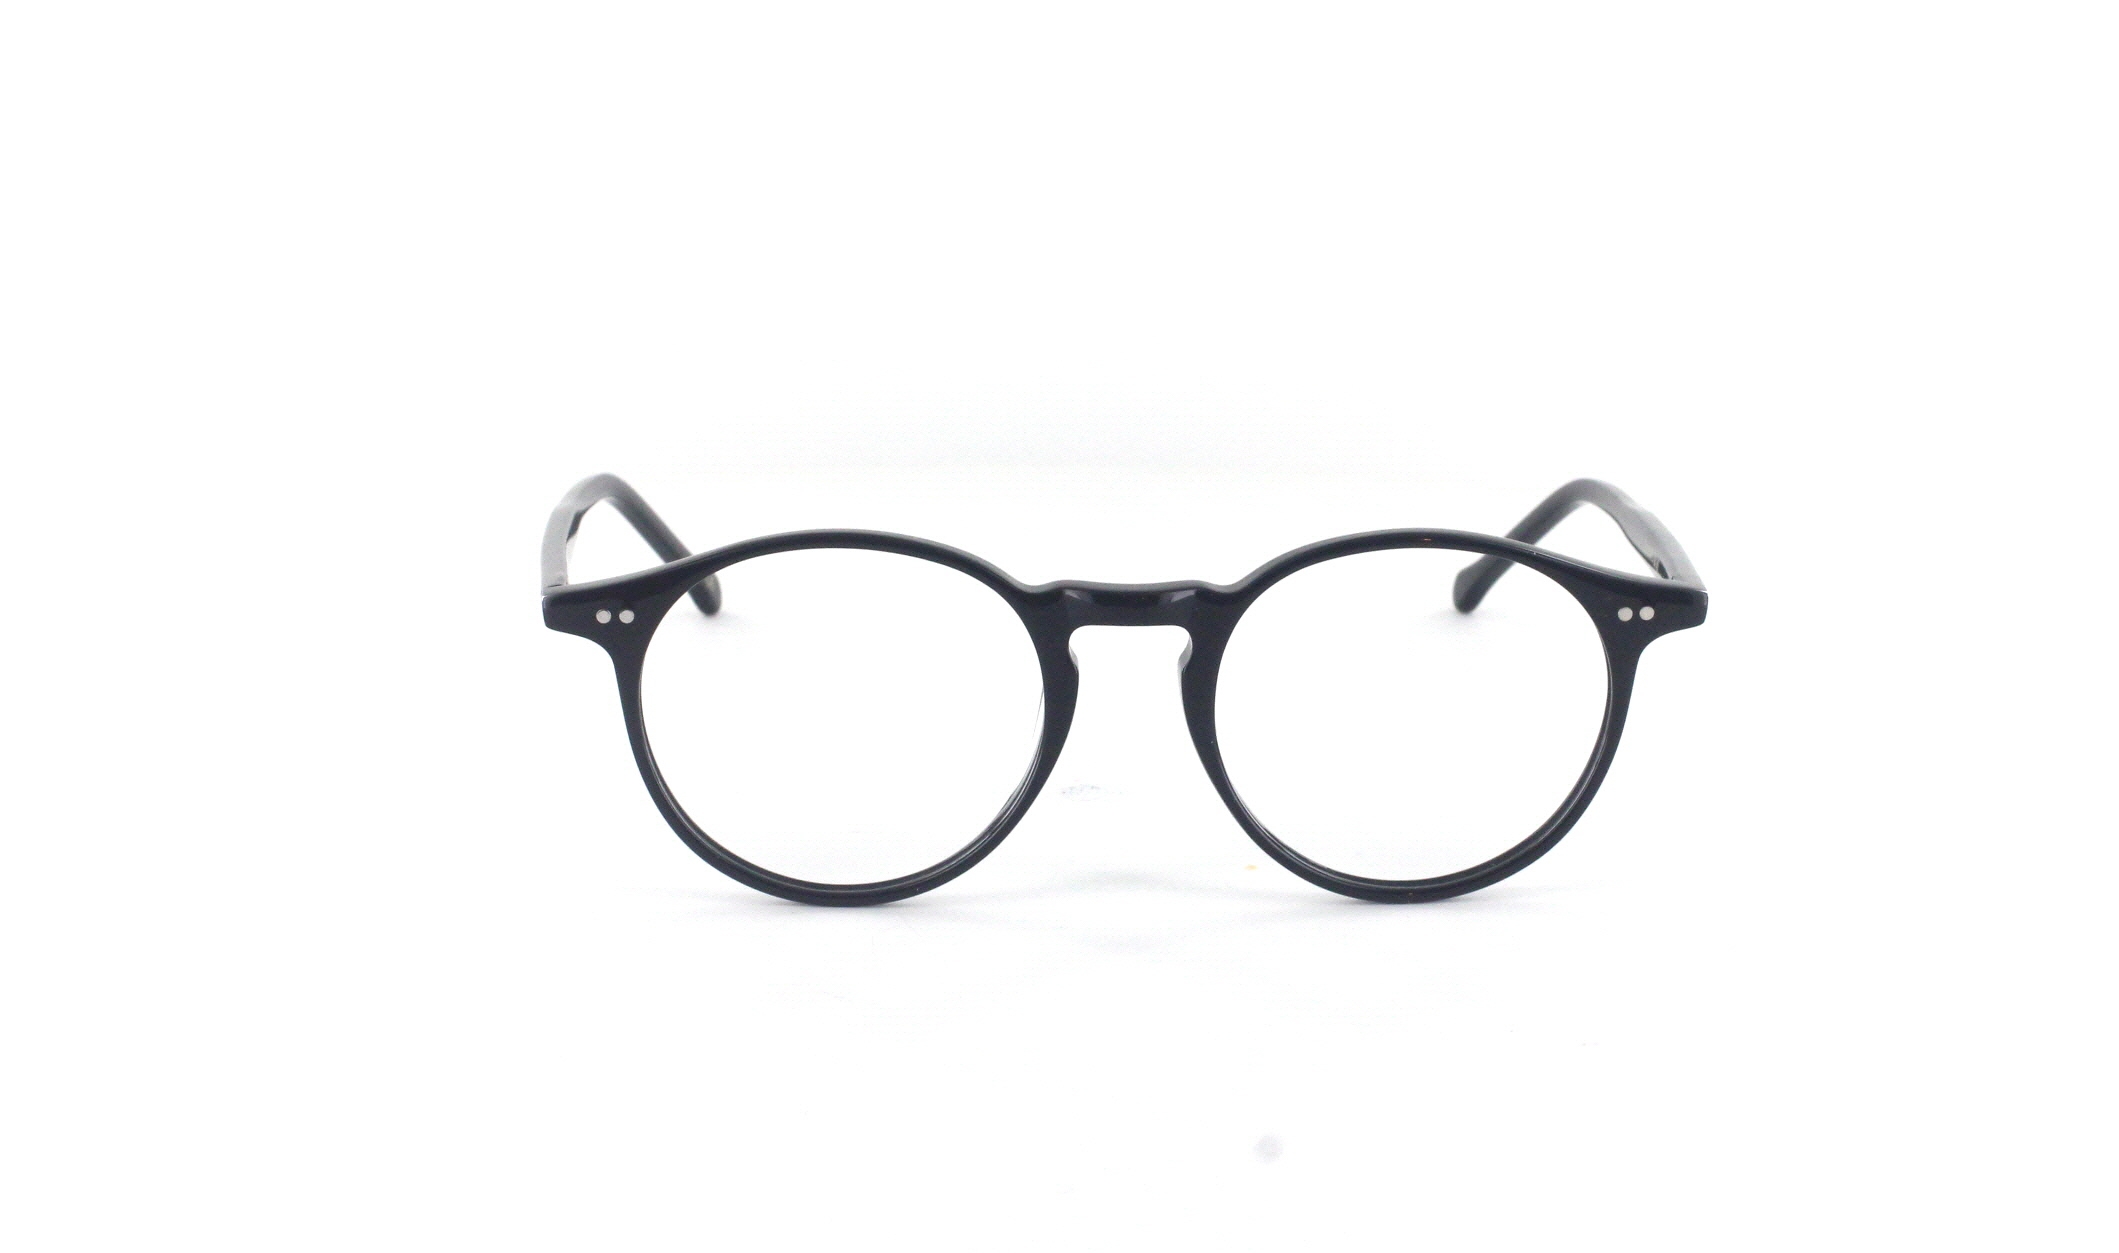 Classic No1 Brille für eckige Gesichter exklusiv bei Briloro kaufen!